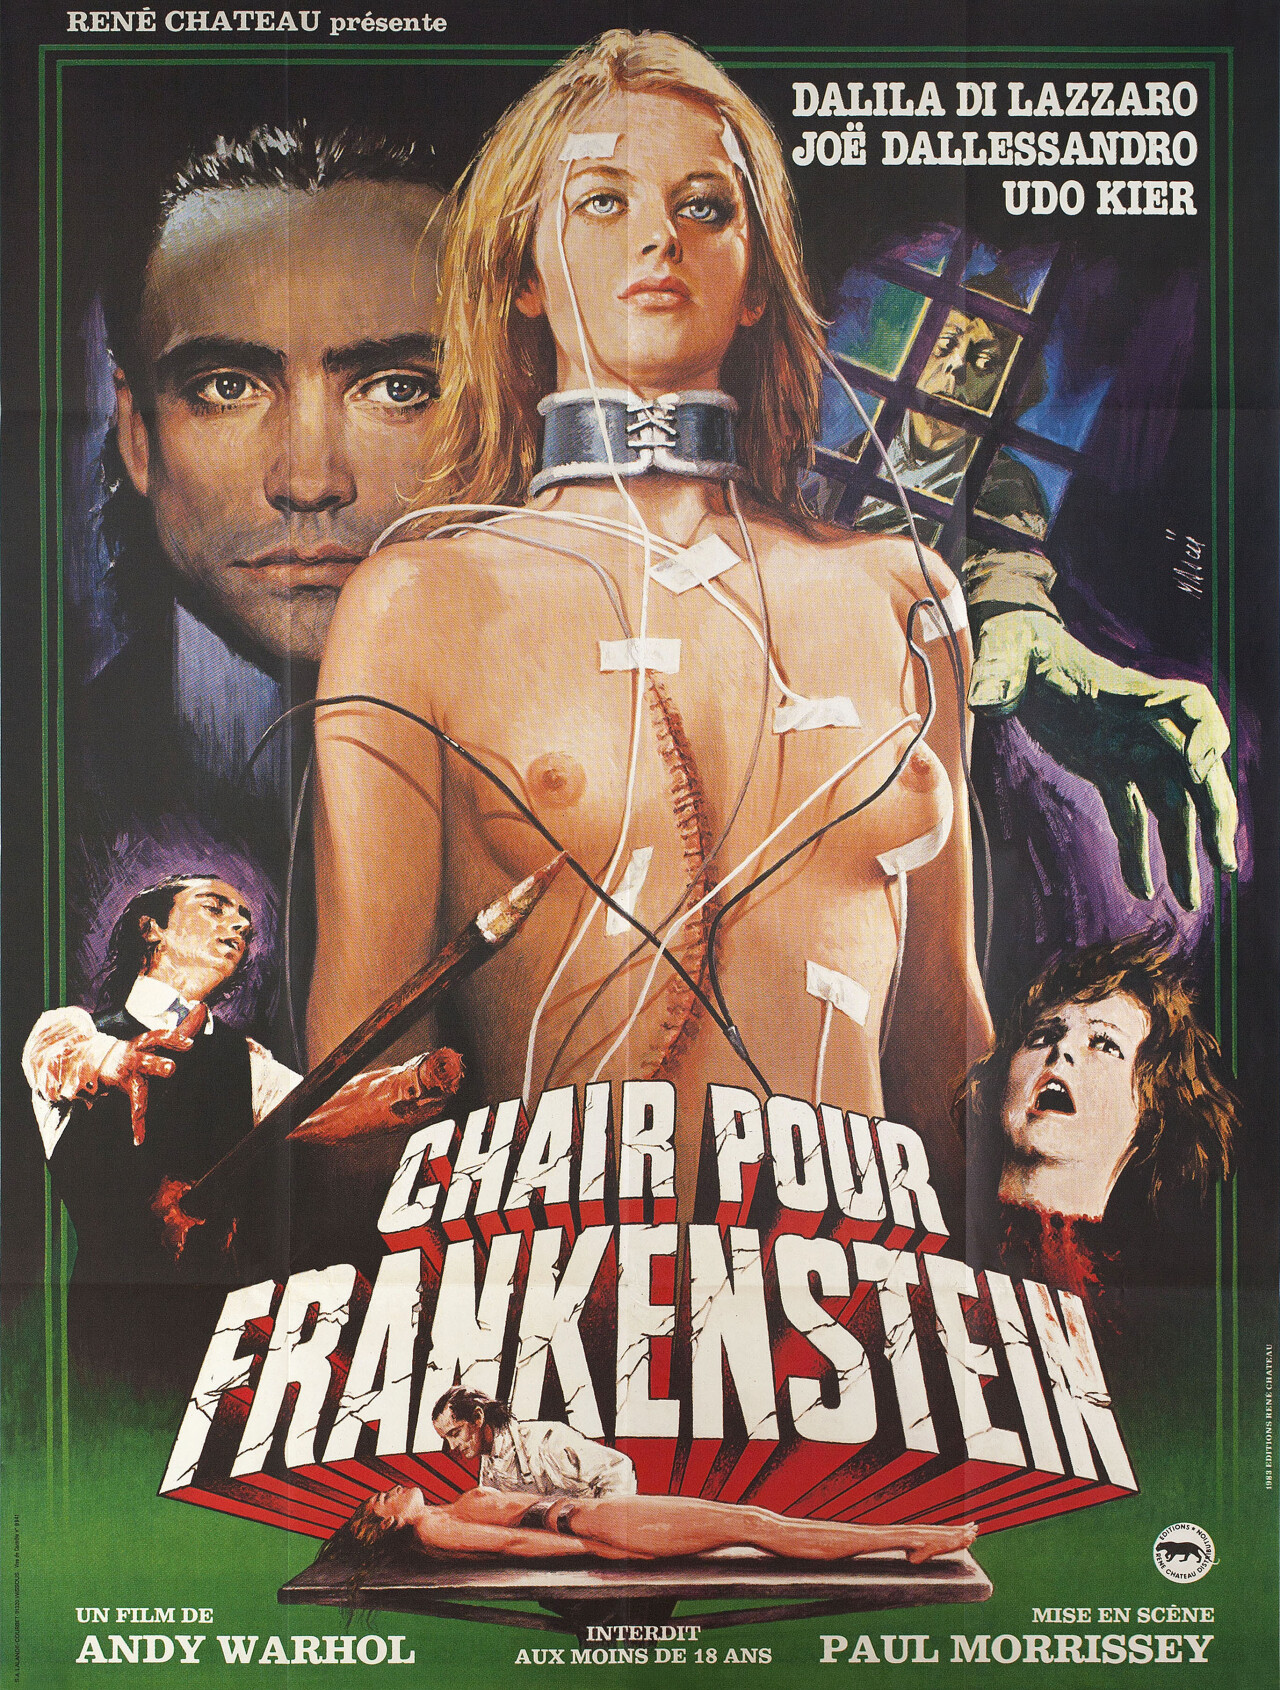 Тело для Франкенштейна (Andy Warhols Frankenstein, 1973), режиссёр Пол Моррисси, французский постер к фильму, автор Жан Маски (монстры, 1983 год)